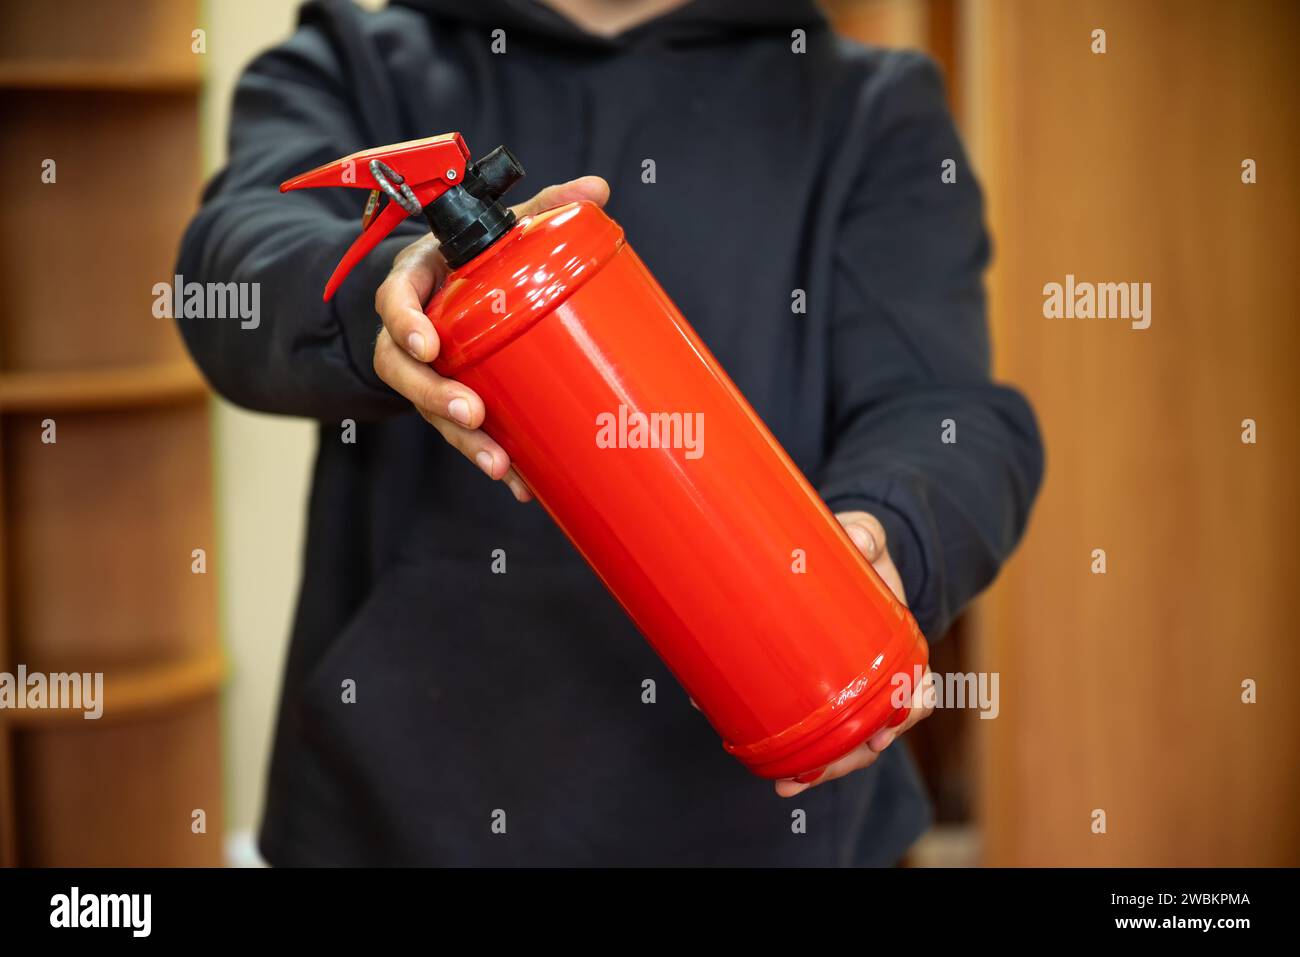 Un homme tient un extincteur dans le bureau. Le concept de sécurité incendie Banque D'Images